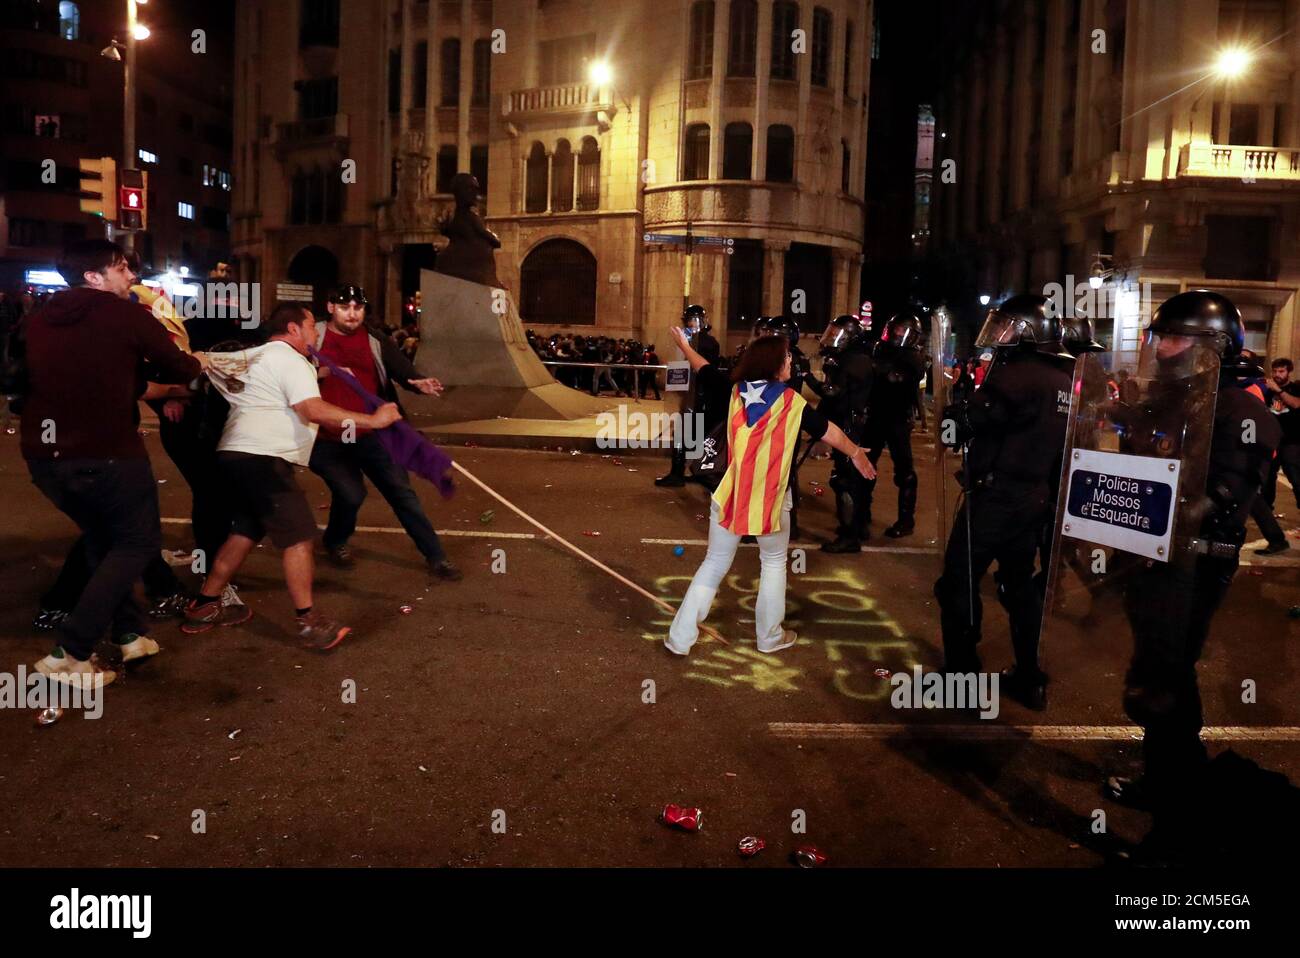 Katalanische Demonstranten, die sich für die Unabhängigkeit einsetzen, gehen während eines Protestes gegen die Polizeiaktion in Barcelona, Spanien, am 26. Oktober 2019 auf die Bereitschaftspolizei zu. REUTERS/Sergio Perez Stockfoto